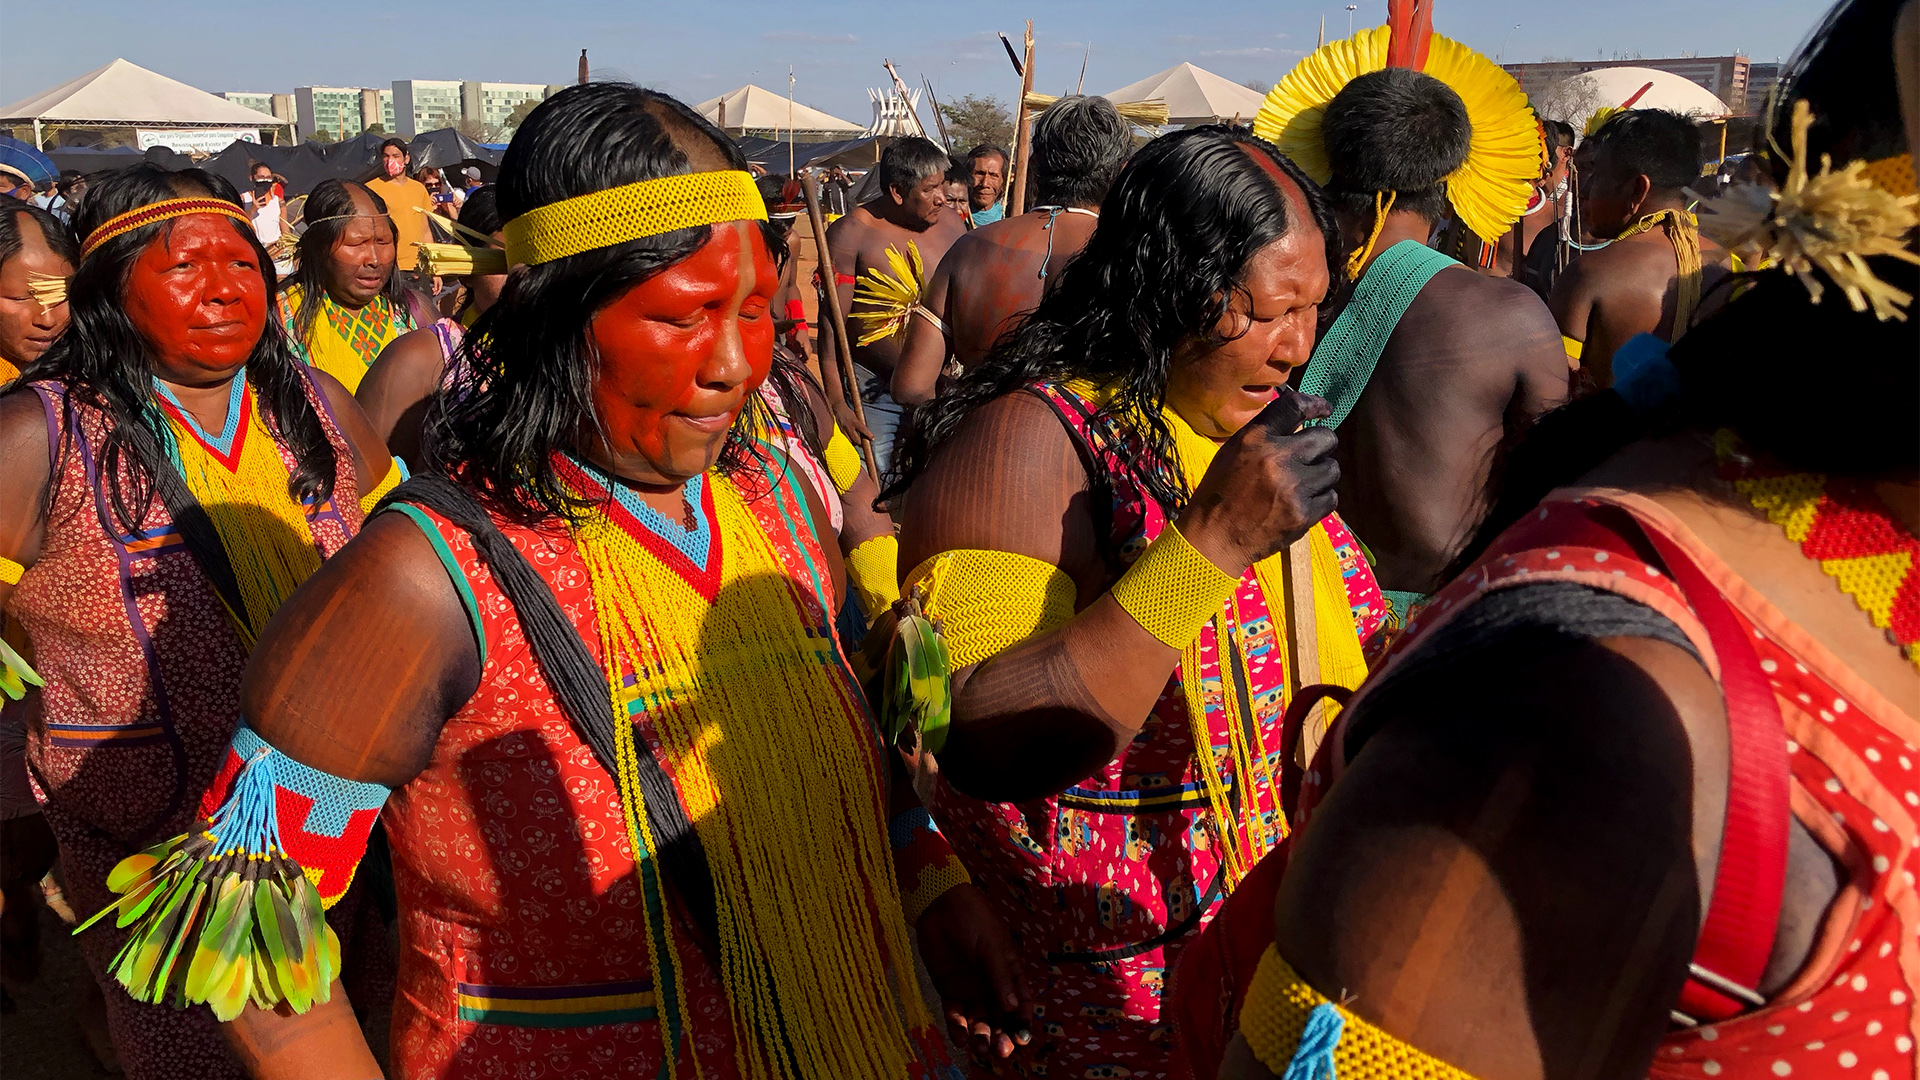 Protestcamp der Indigenen aus allen Teilen Brasiliens | Matthias Ebert